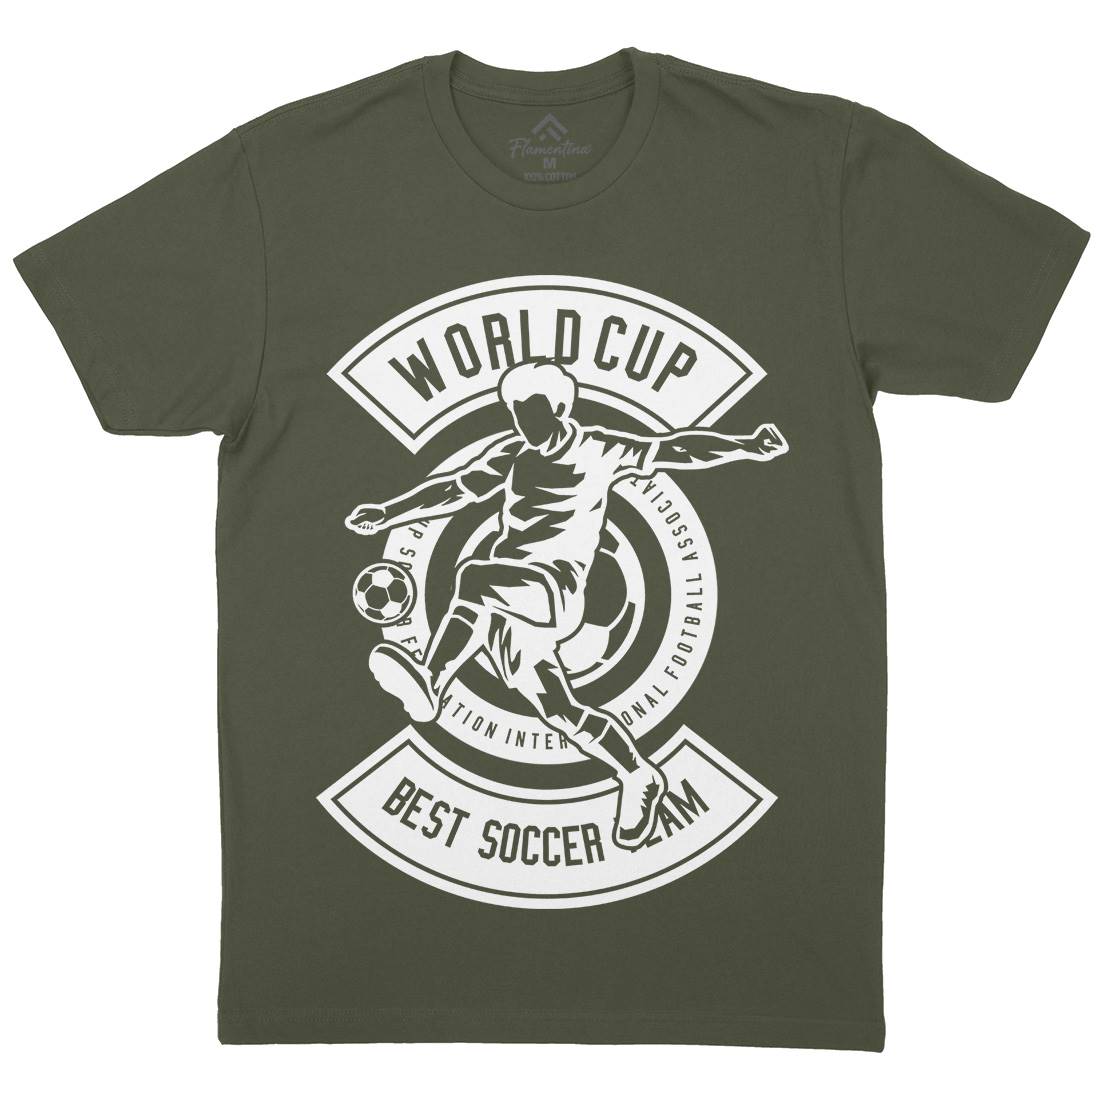 World Cup Soccer Mens Crew Neck T-Shirt Sport B675